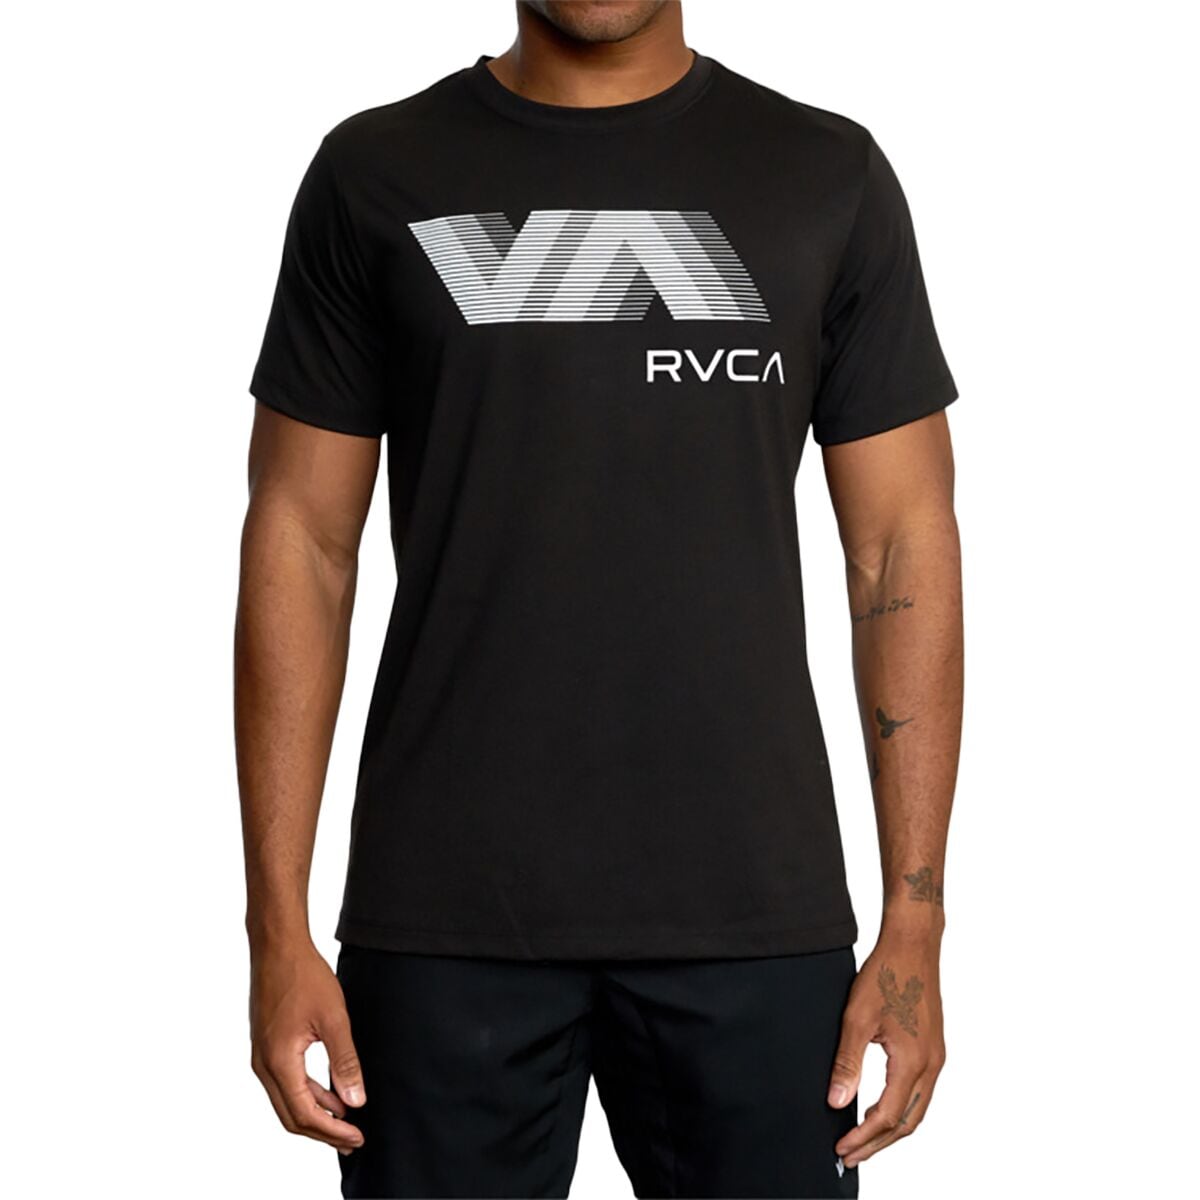 VA RVCA Blur T-Shirt - Men